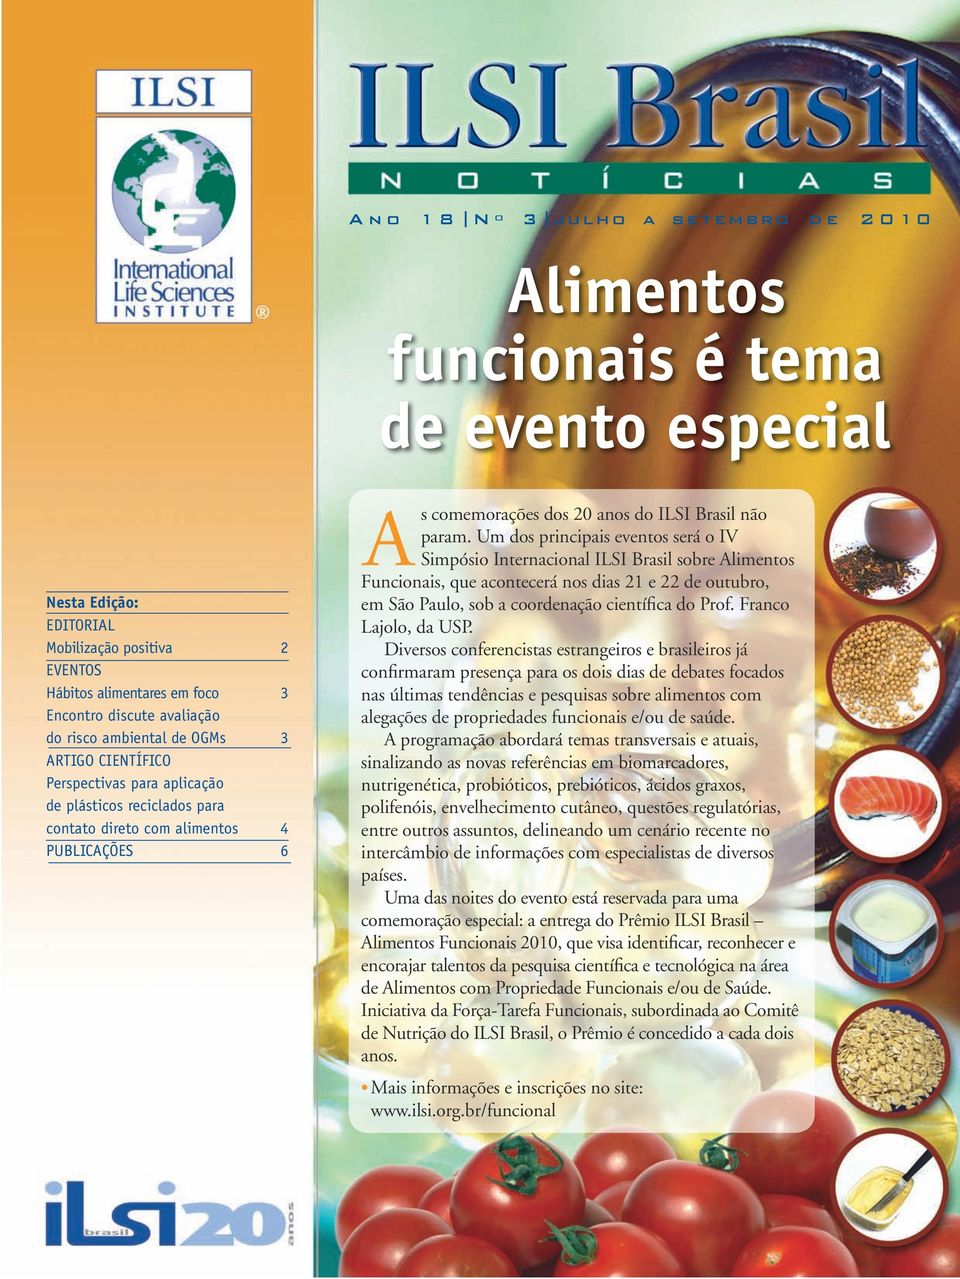 Um dos principais eventos será o IV Simpósio Internacional sobre Alimentos Funcio nais, que acontecerá nos dias 21 e 22 de outubro, em São Paulo, sob a coordenação científica do Prof.